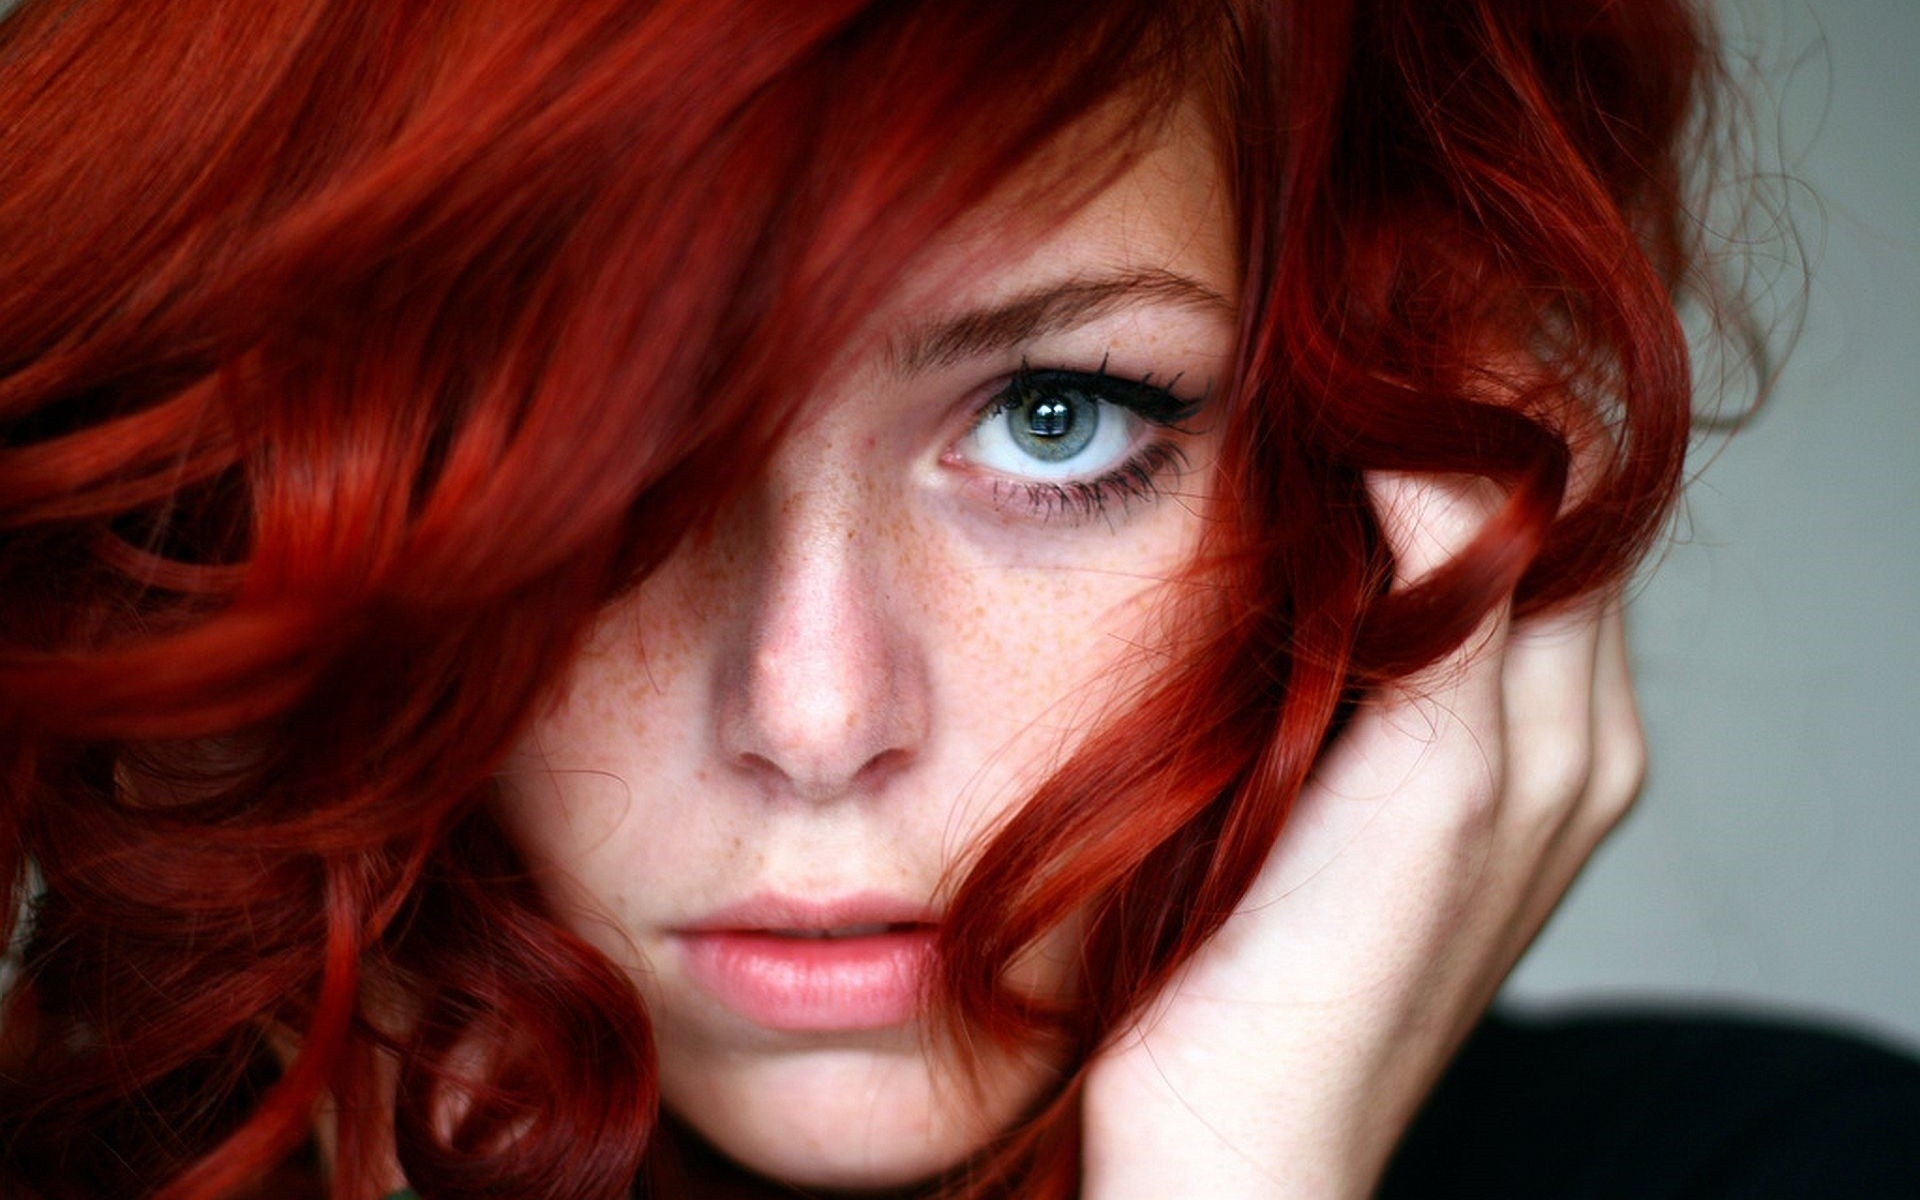 Red head sound аватар дата выхода. Рыжие волосы. Огненно рыжий цвет. Девушка с рыжими волосами.